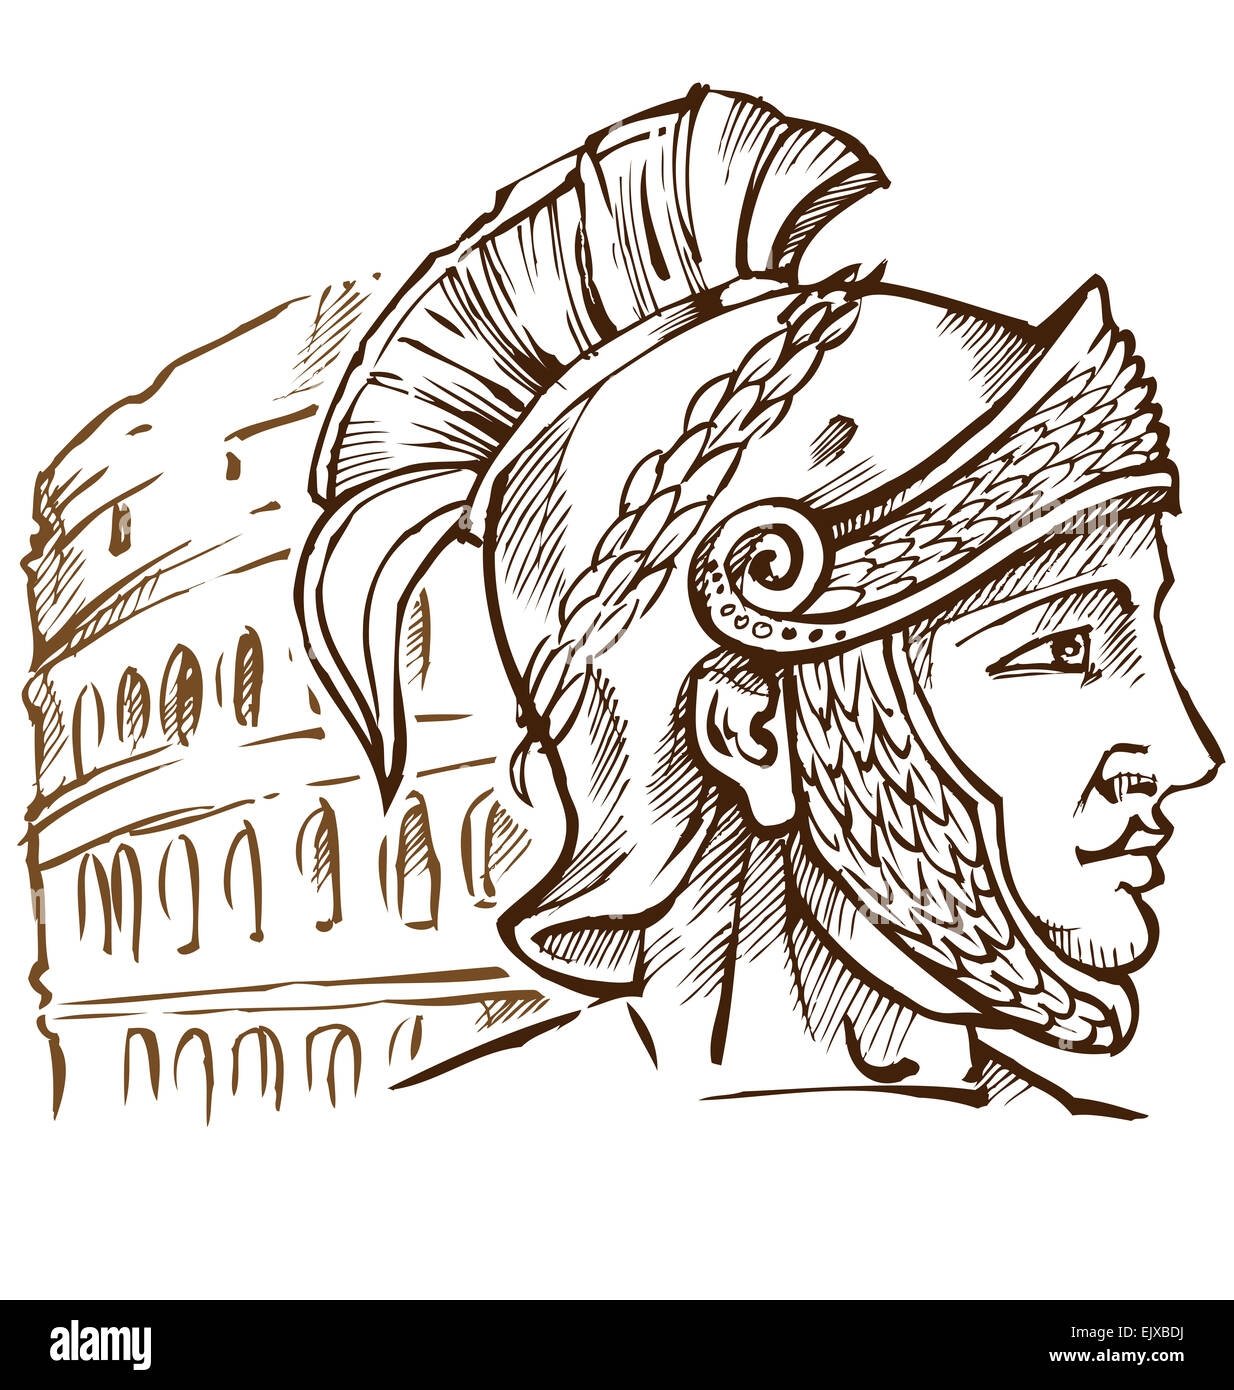 Рисунок на тему древний Рим